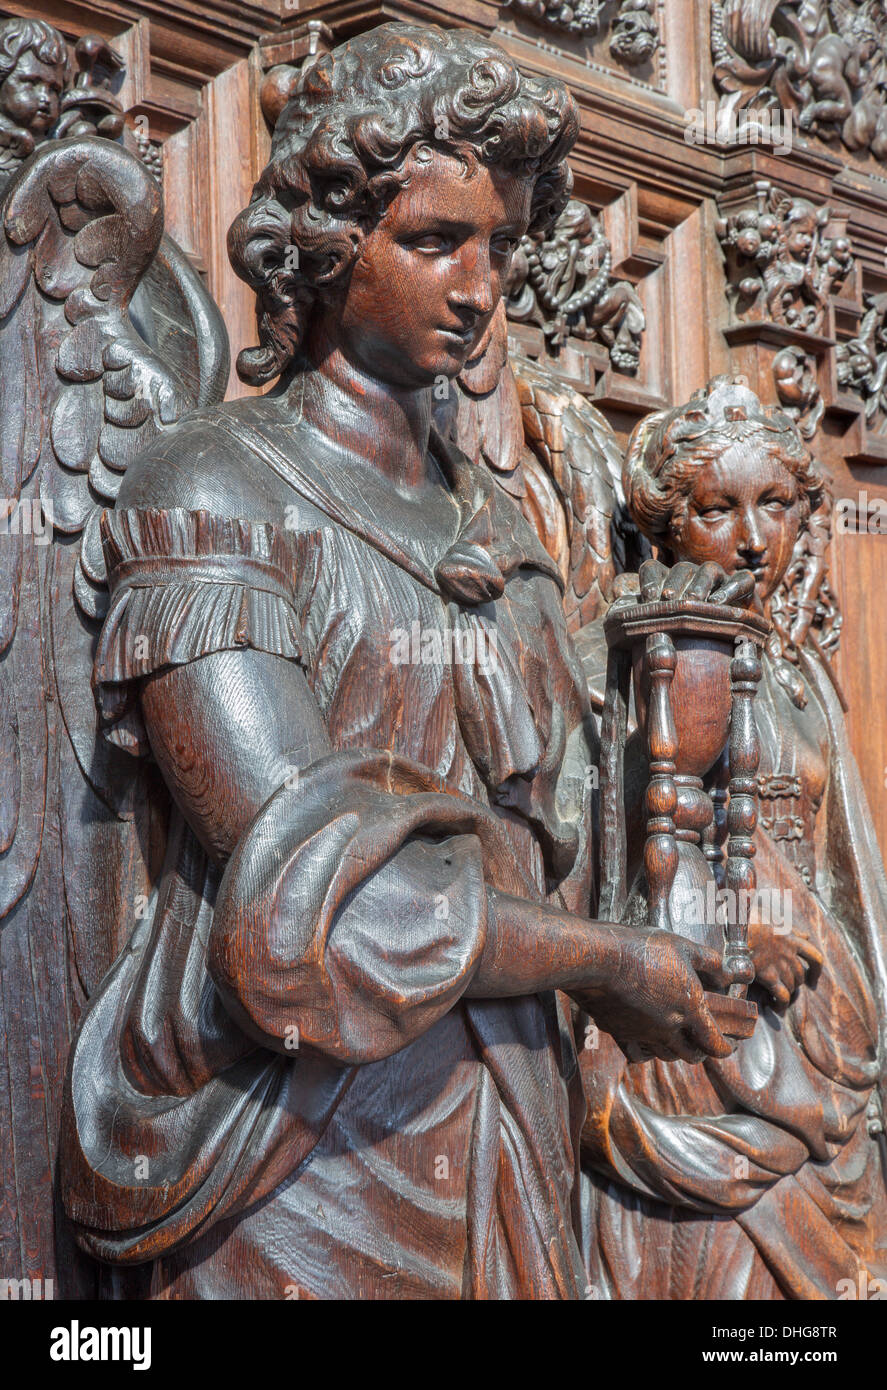 Anversa, Belgio - 5 settembre: Statua di angelo come simbolo di speranza - il cardinale virtous in san Paolo la Chiesa (Paulskerk) Foto Stock